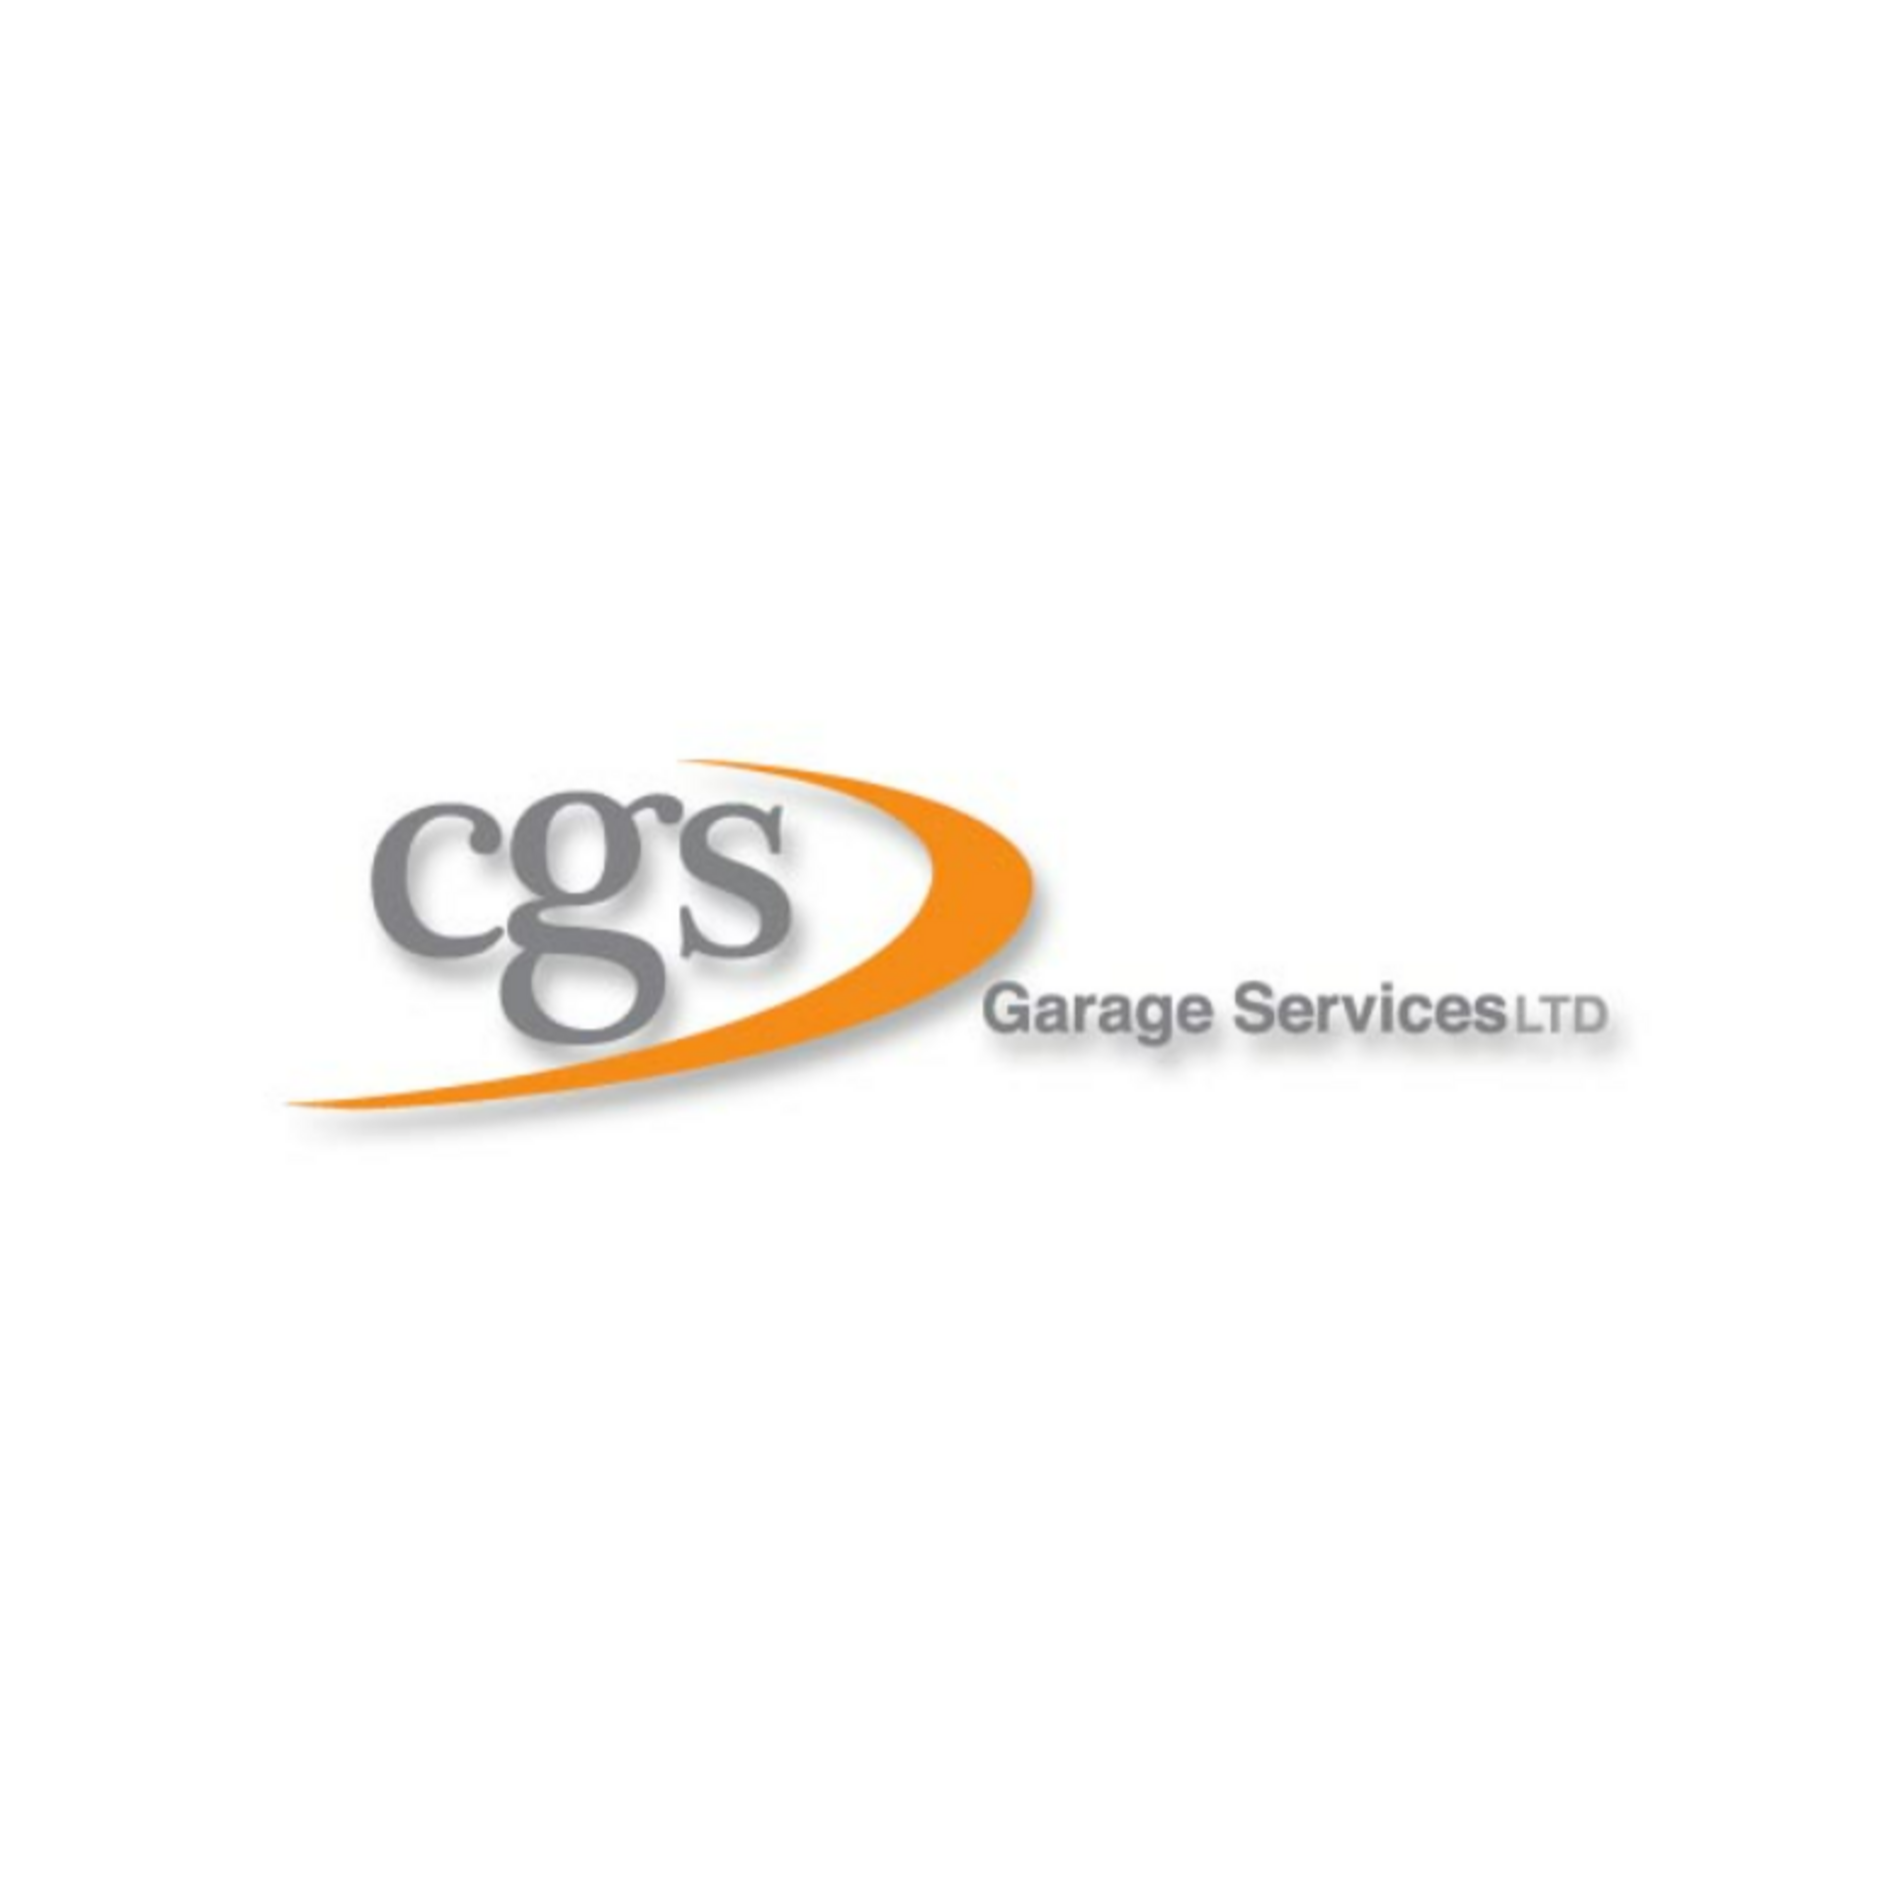 CGS GARAGE SERVICES LTD LOGO CGS Garage Services Hungerford 01488 684045